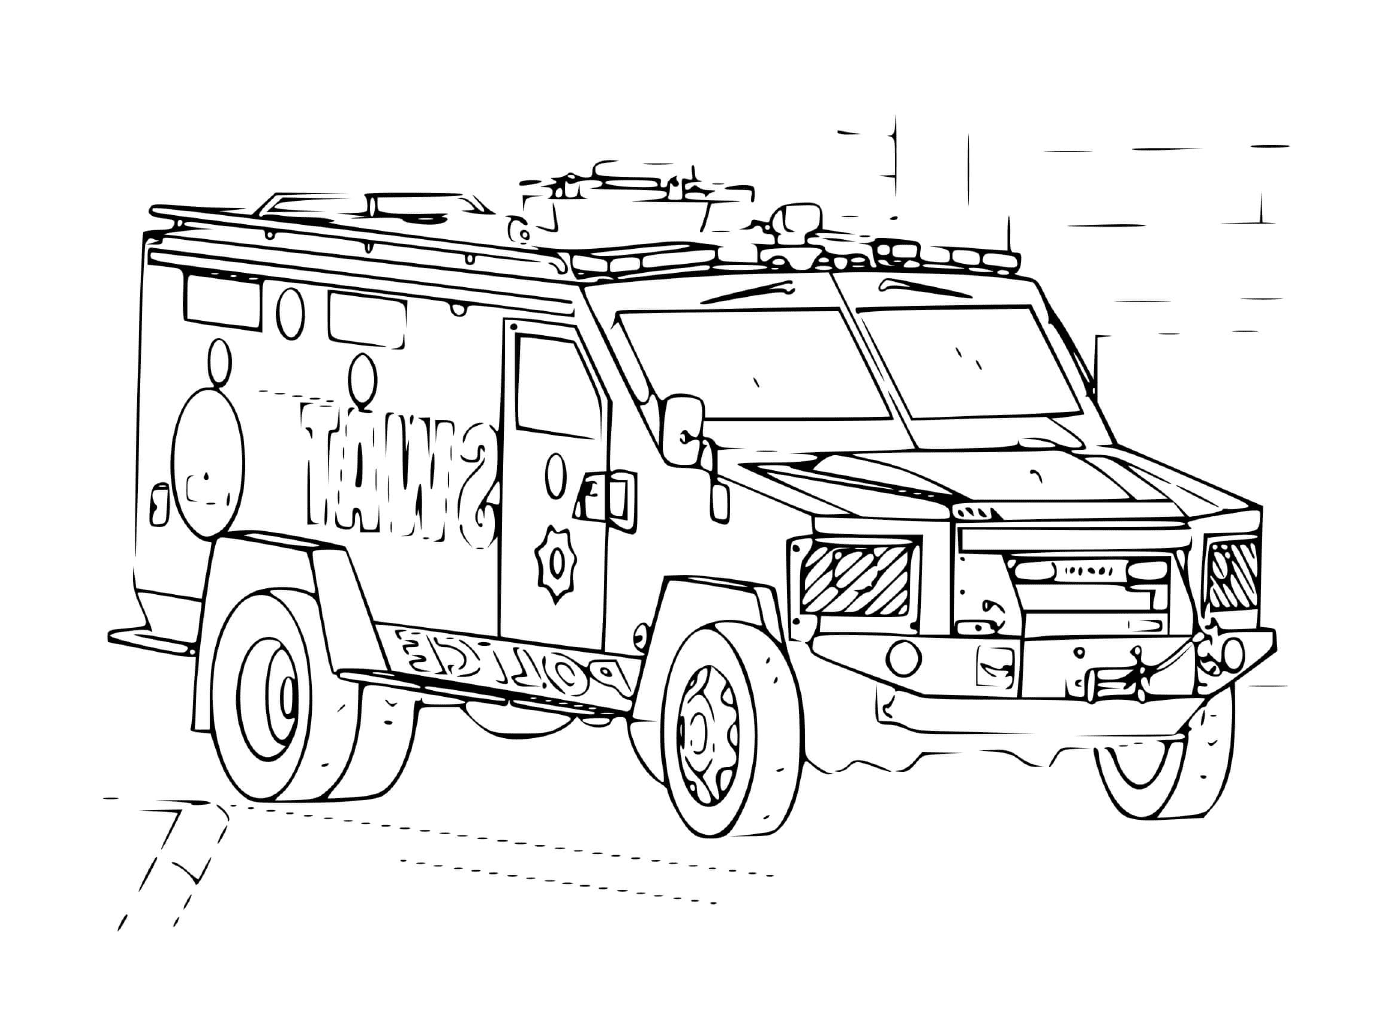  SWAT-Fahrzeug für die Intervention 